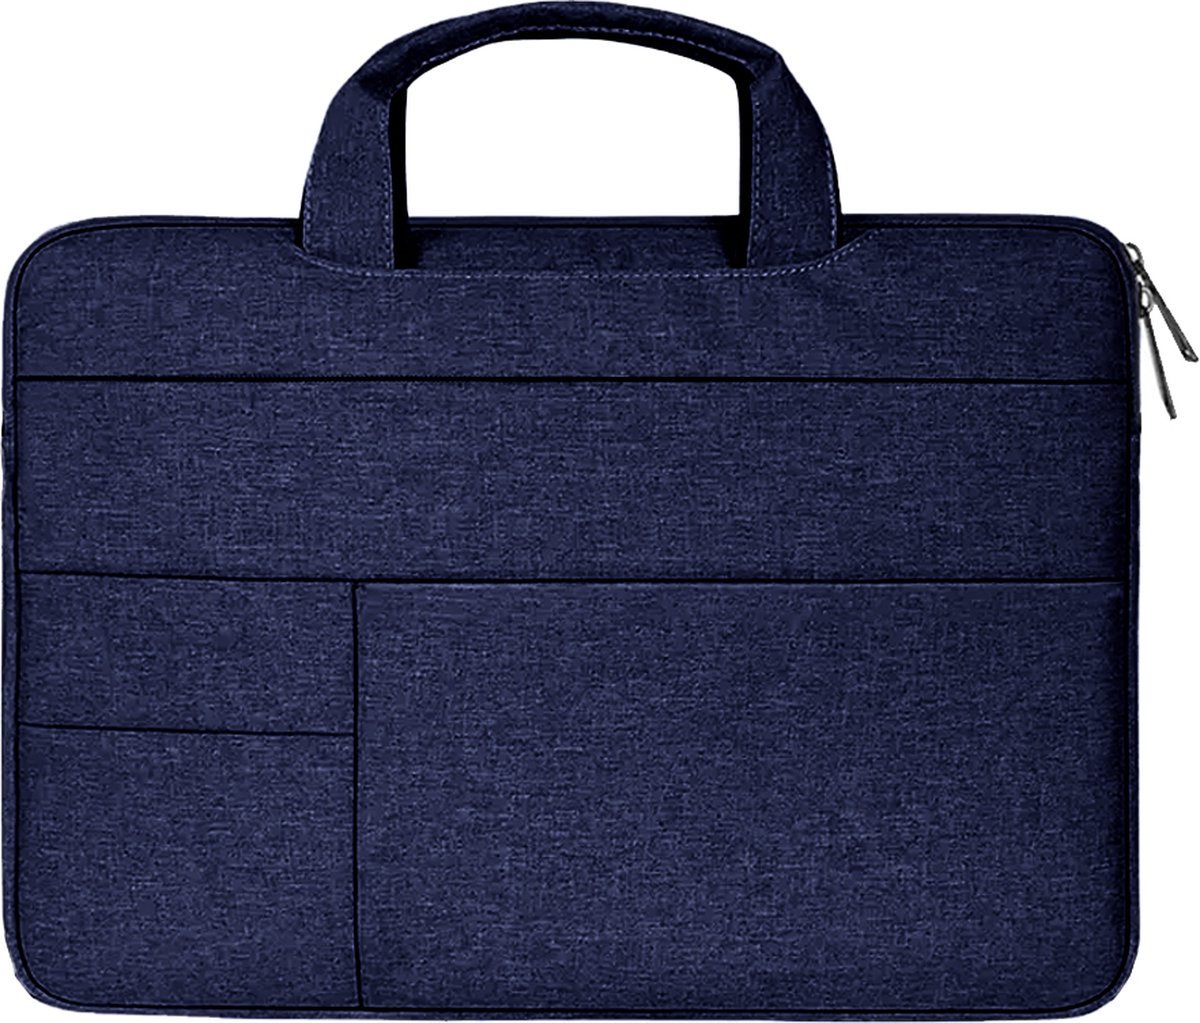 Case2go - Laptophoes geschikt voor HP Envy - Laptoptas 13 inch / 13.3 inch - Spatwaterdicht - Met Handvat - Donker Blauw